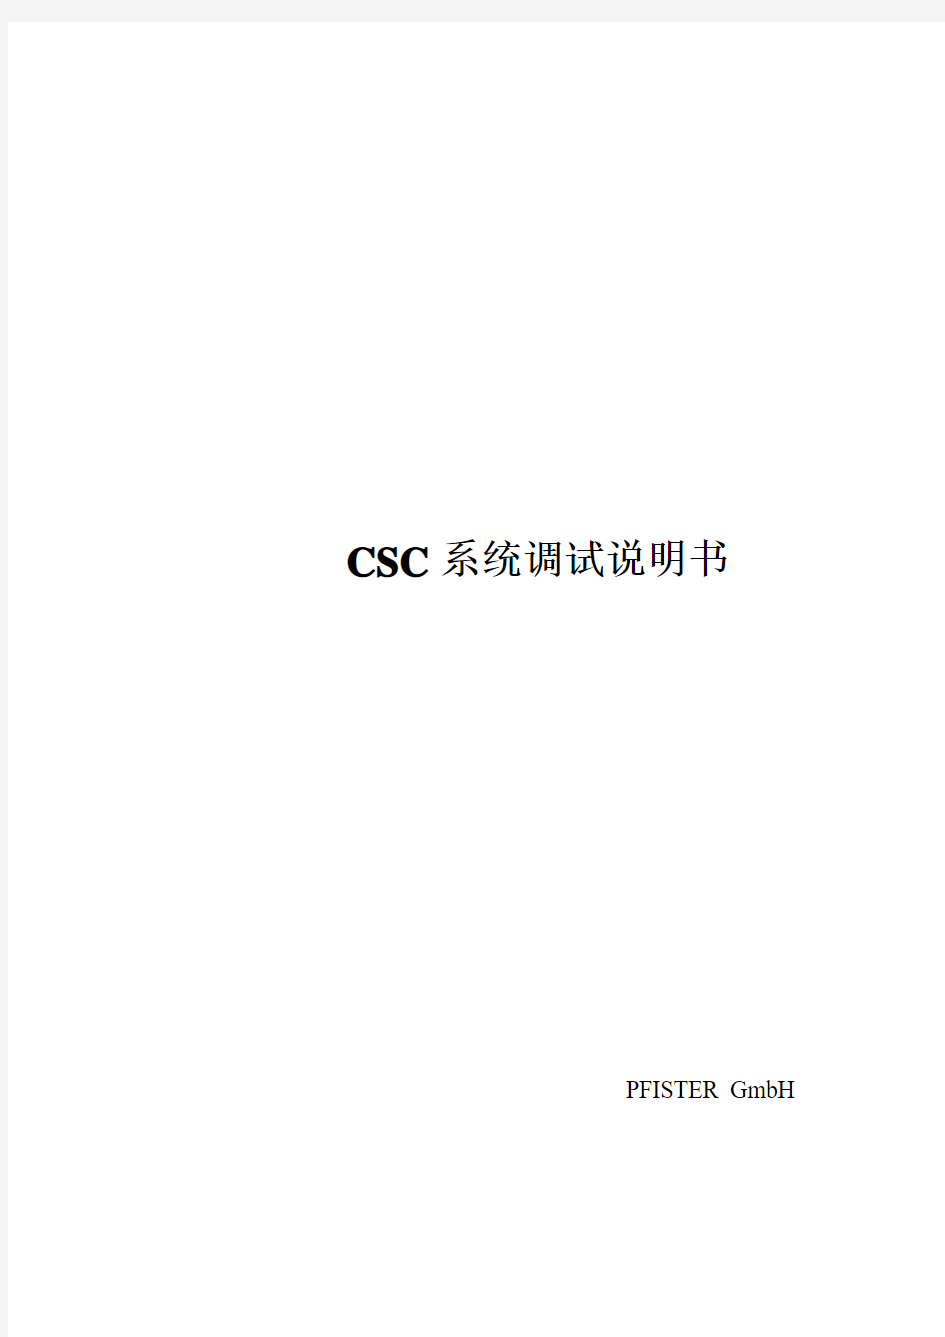 菲斯特转子秤CSC 调试手册